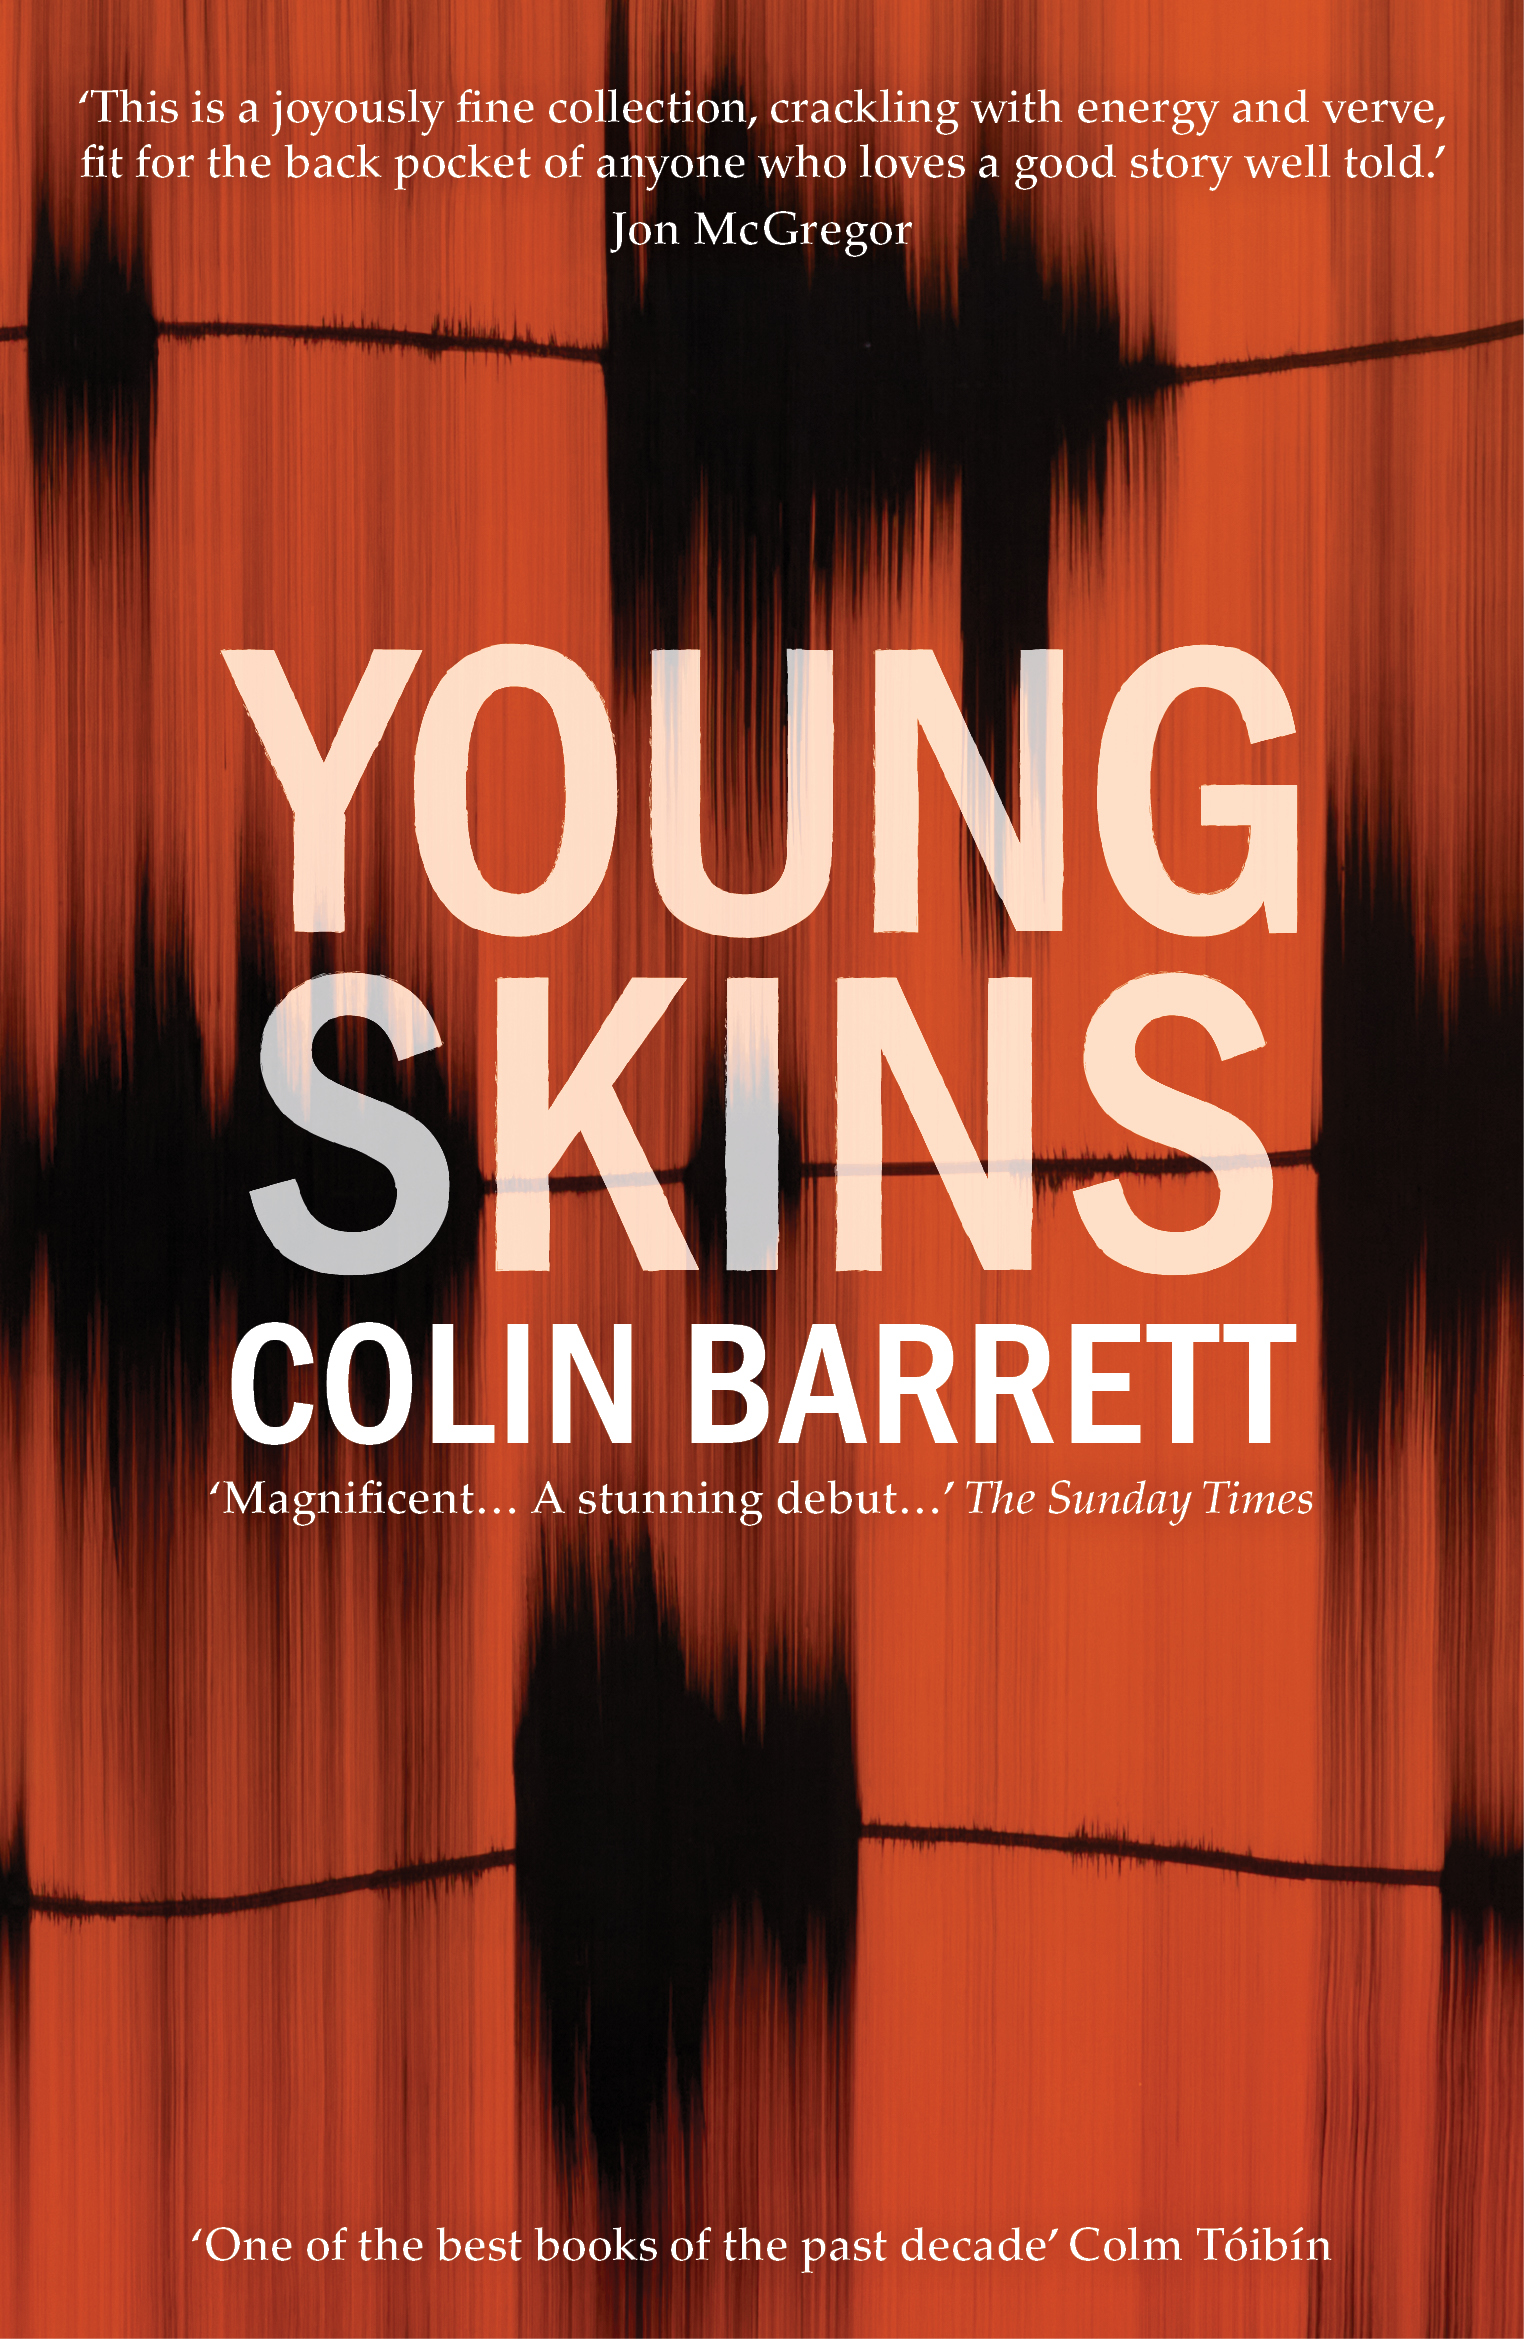 Young Skins-Colin Barrett 2022 hi-res front